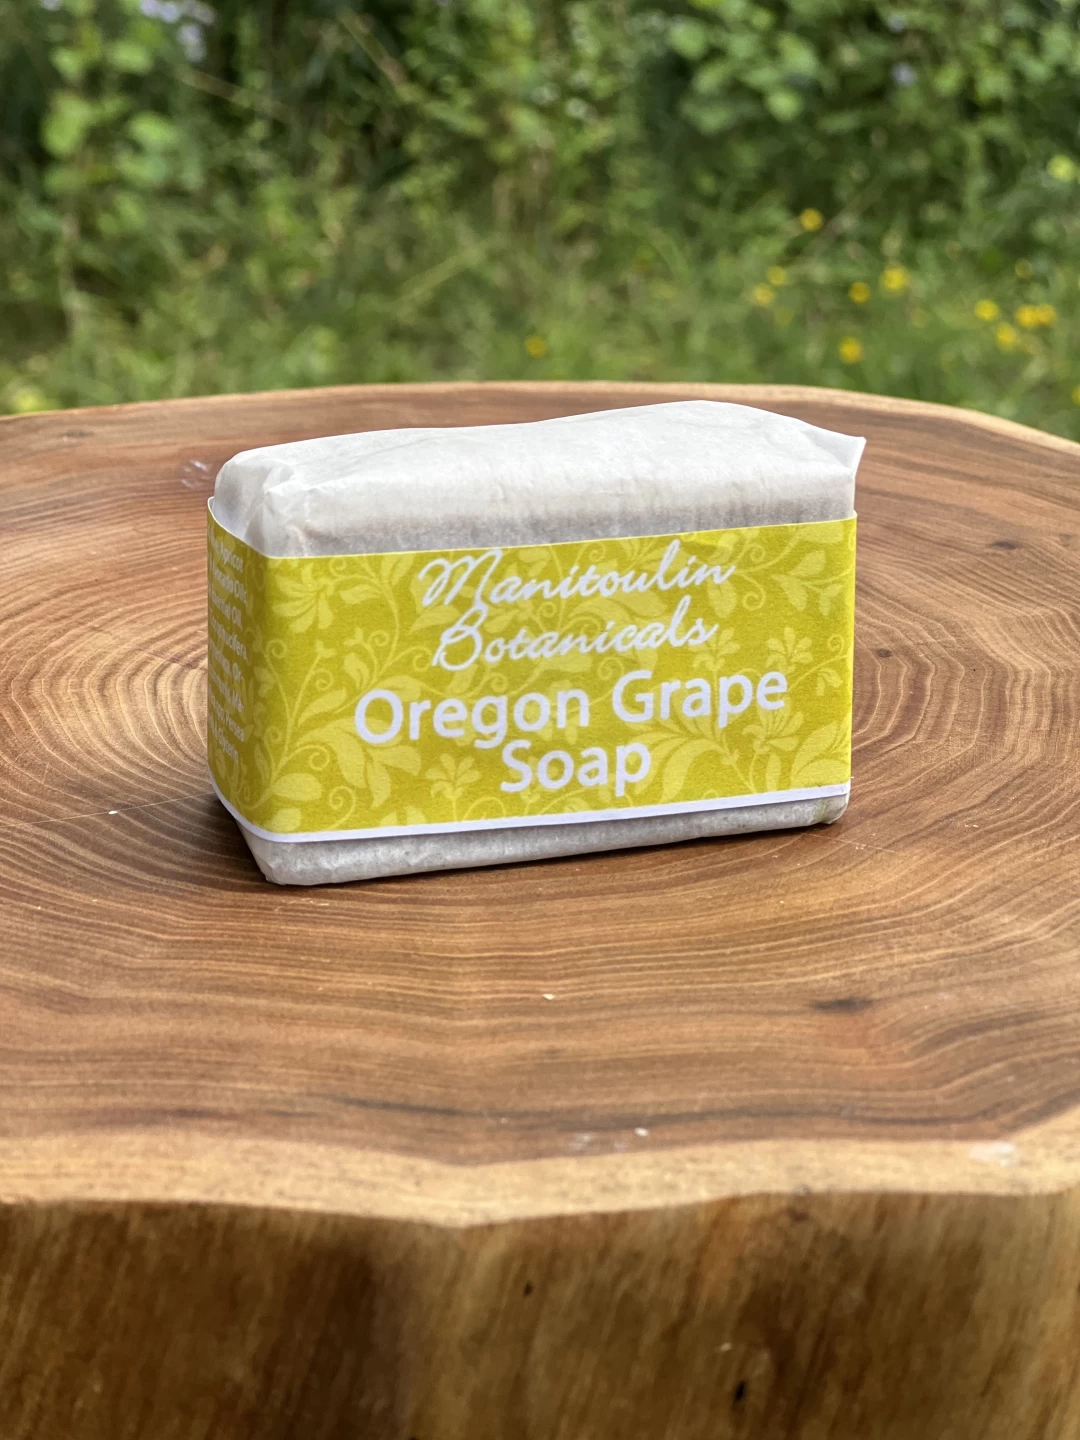 Oregon Grape Soap